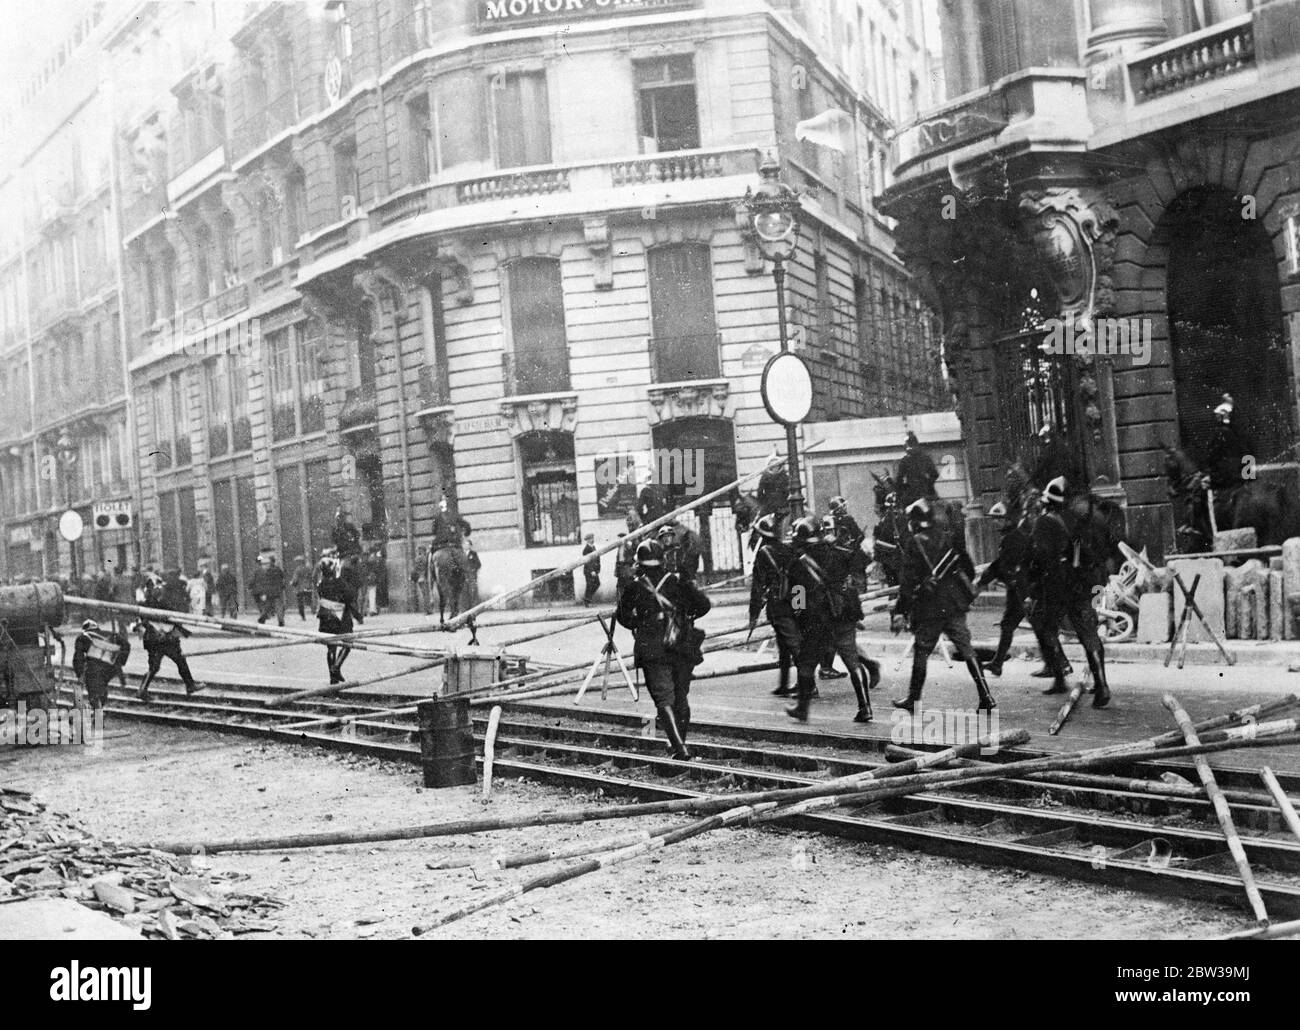 Más de mil arrestos en París contra los disturbios por corte salarial - policía en feroces batallas con manifestantes. Guardias móviles que asaltantes barricadas erigidas por los manifestantes en la Rue Lafayette . 20 de julio de 1935 Foto de stock